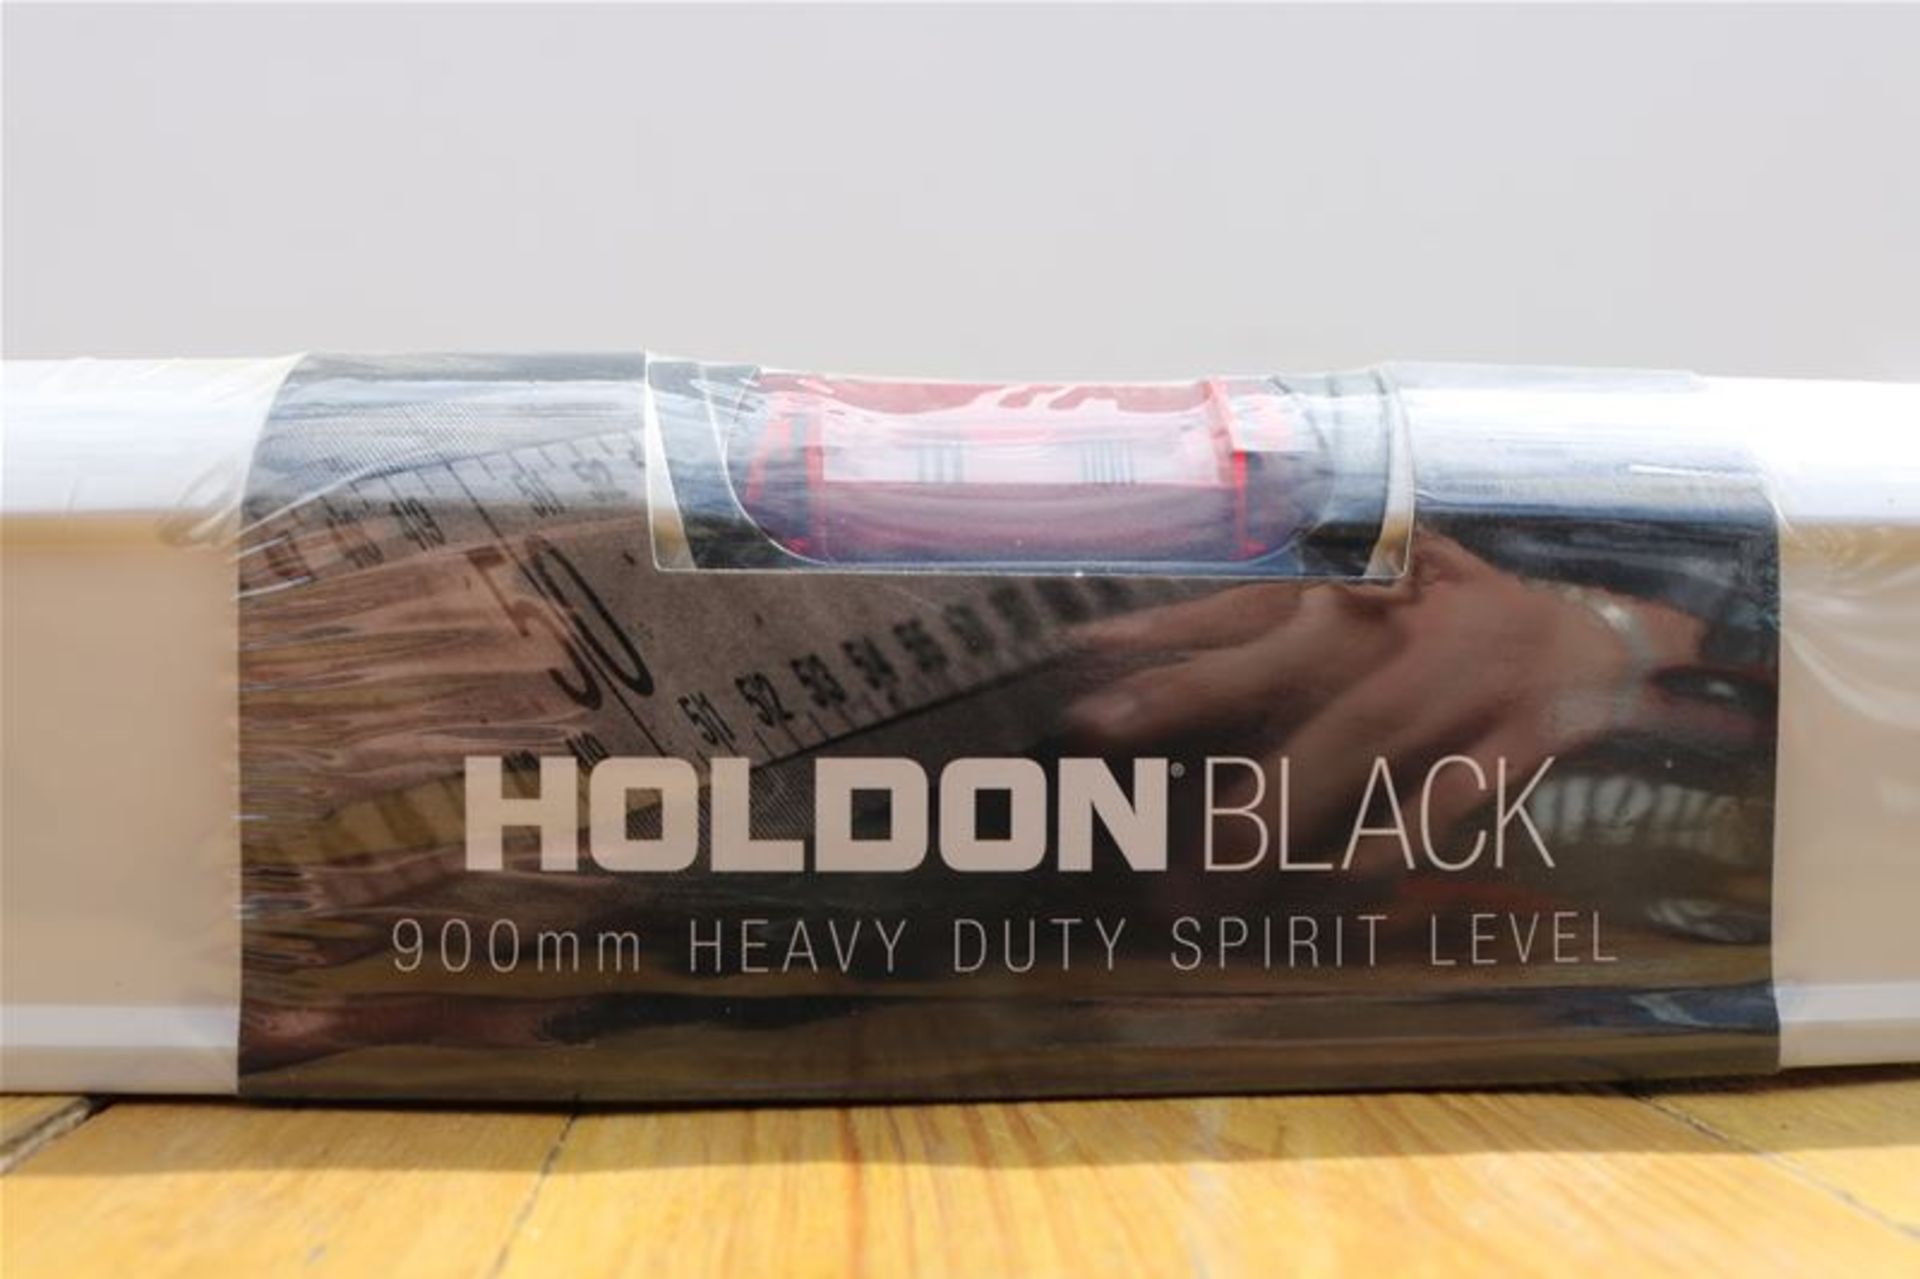 10 x HOLDON BLACK 900mm Heavy Duty Spirit Level - Image 2 of 2